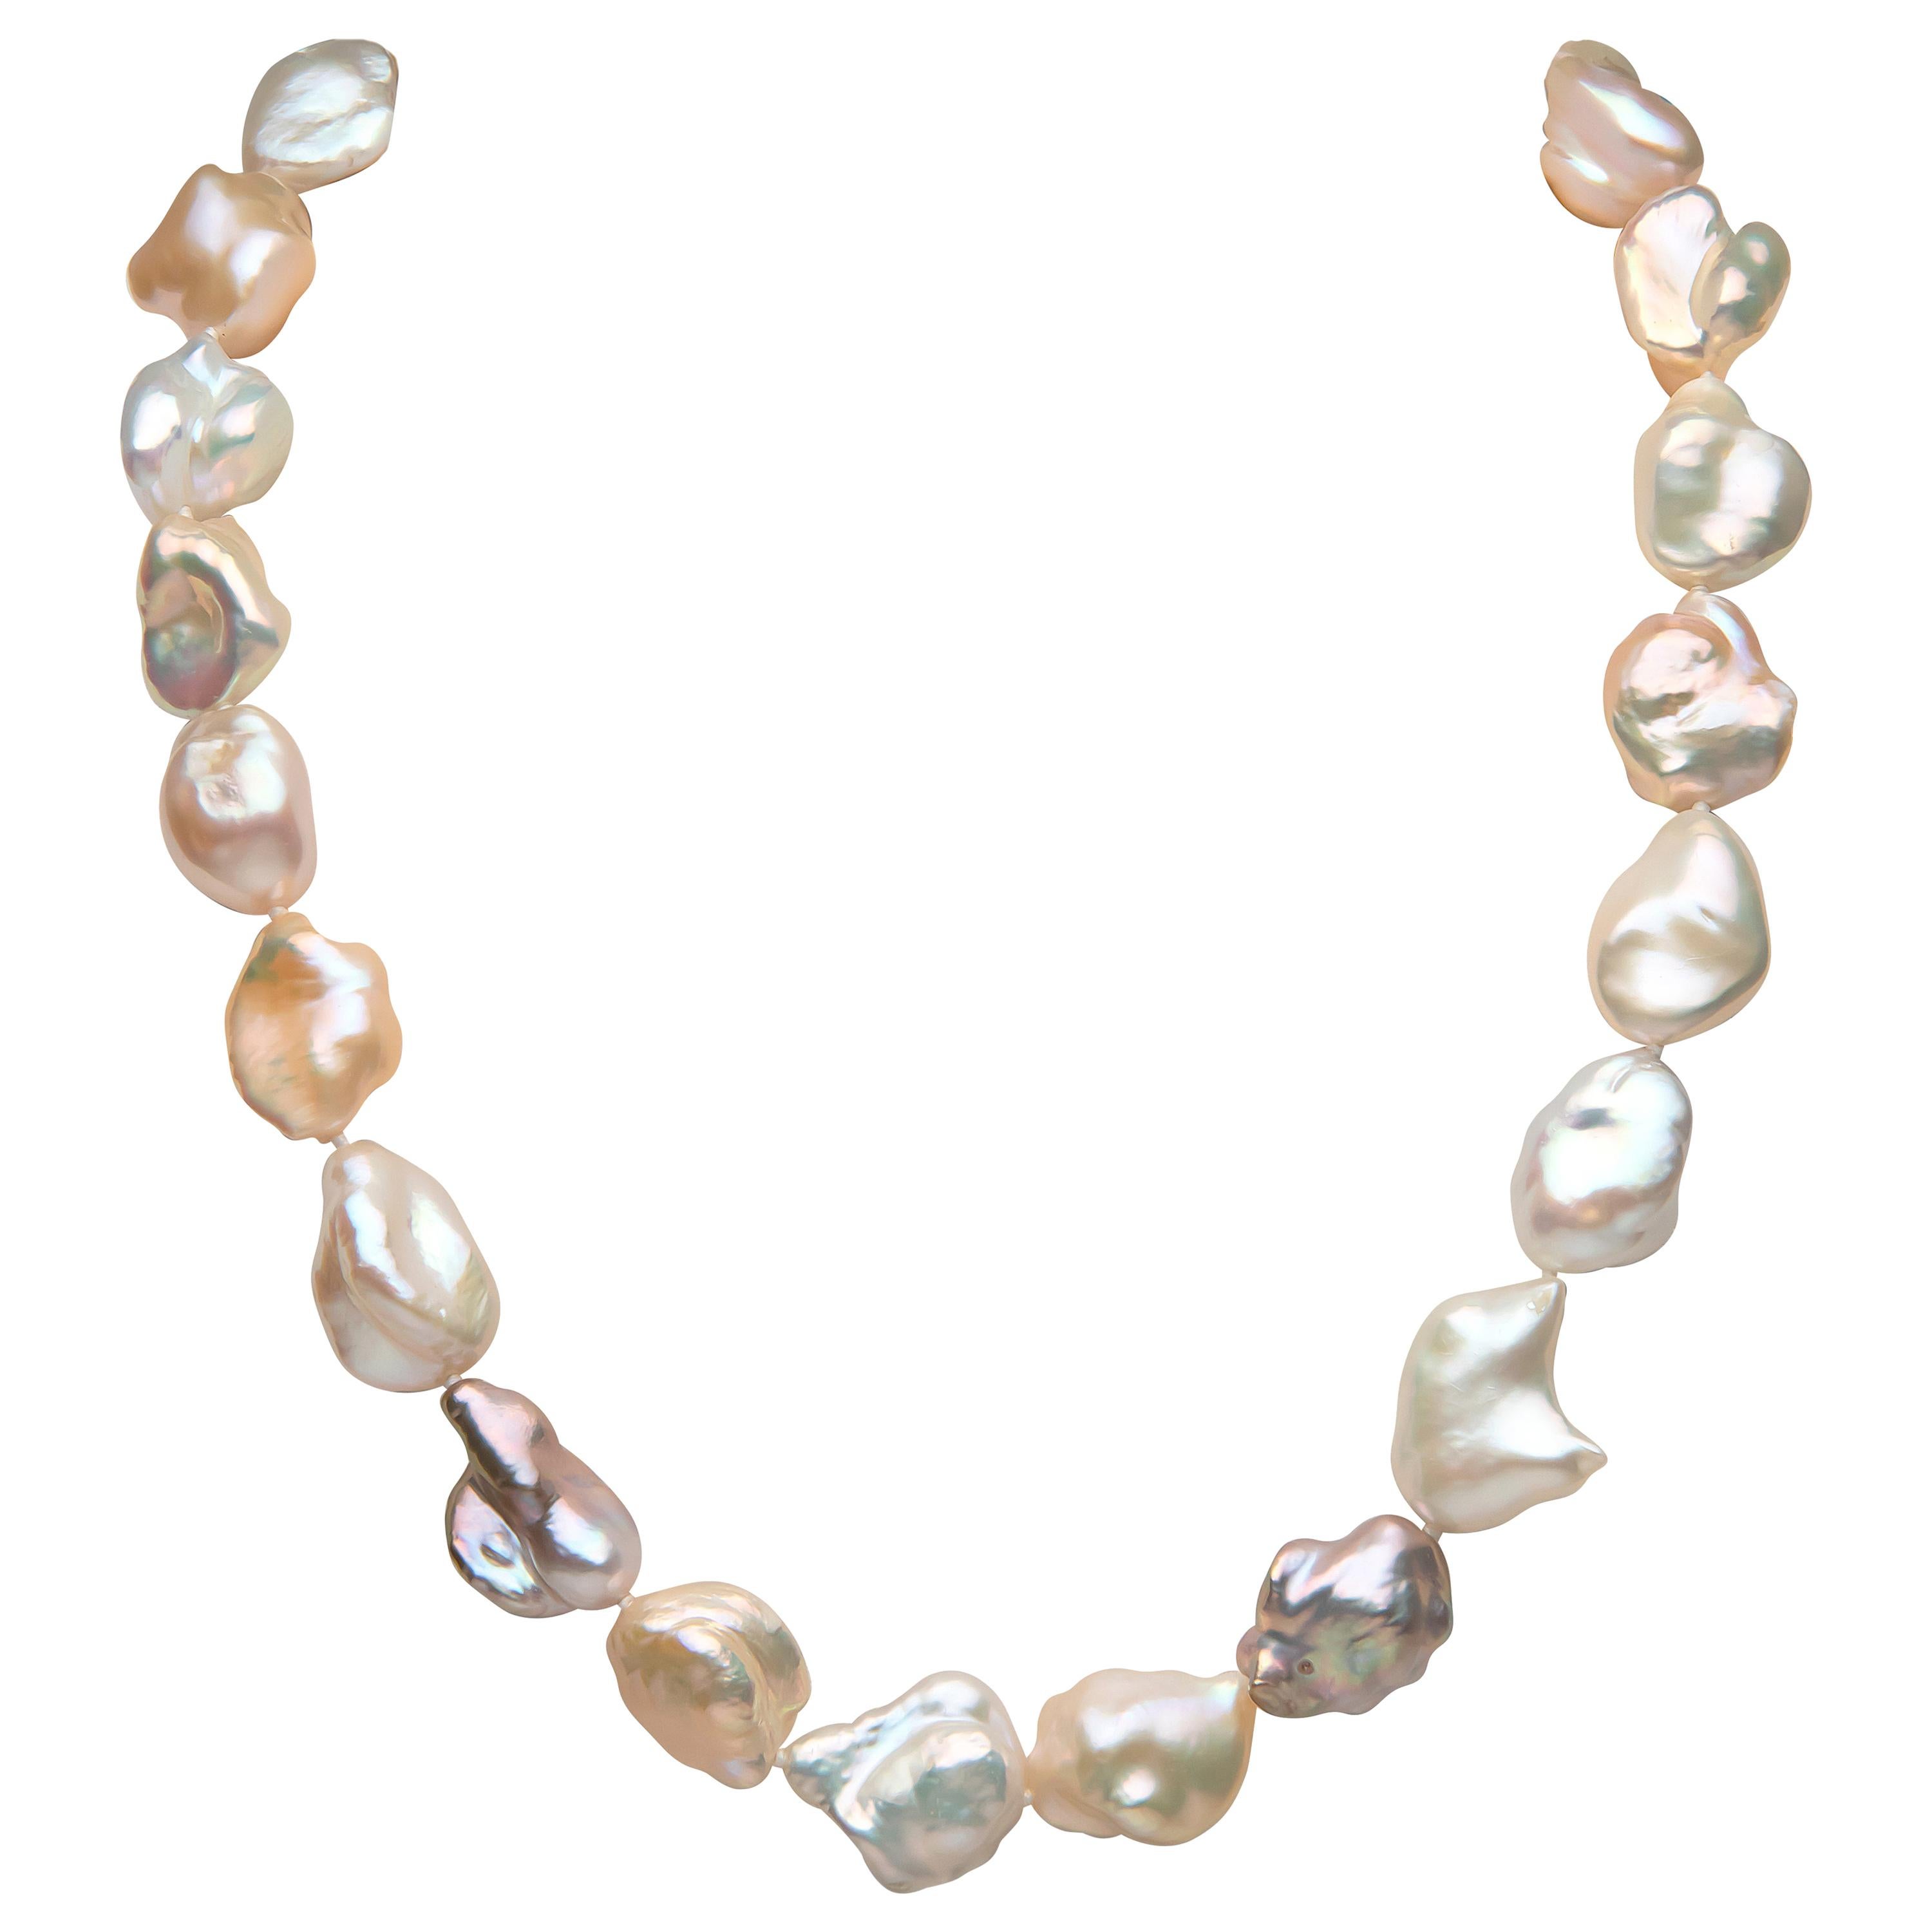 Yoko London Baroque Freshwater Pearl Necklace in 18 Karat White Gold